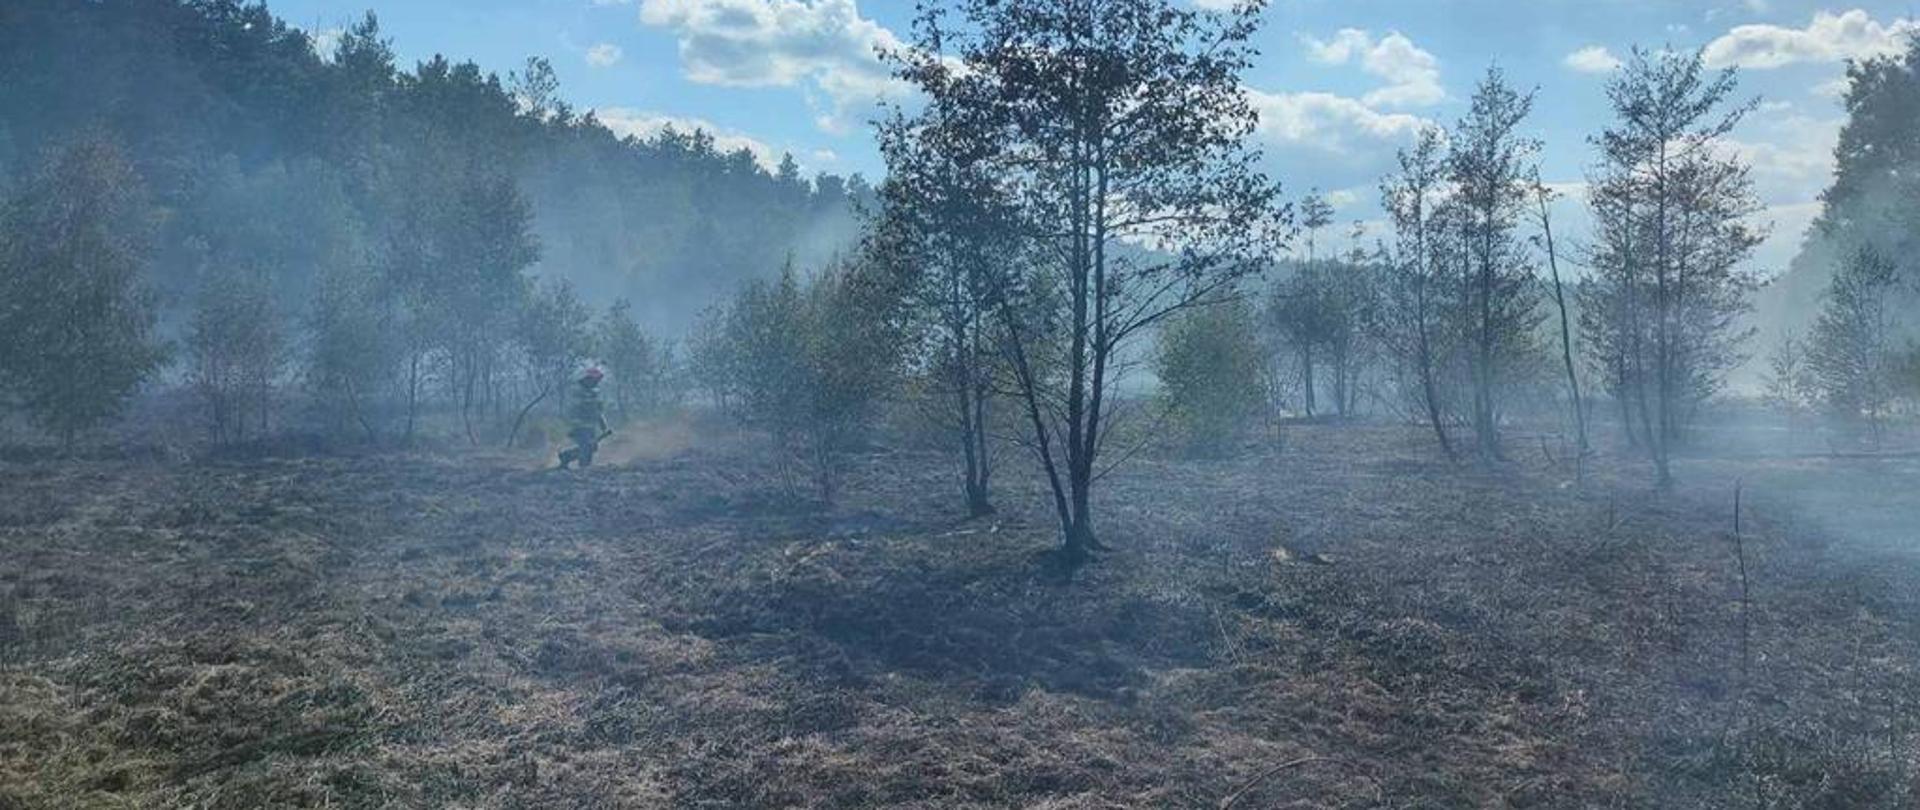 Działania ratownicze podczas pożaru w miejscowości Adamówka.